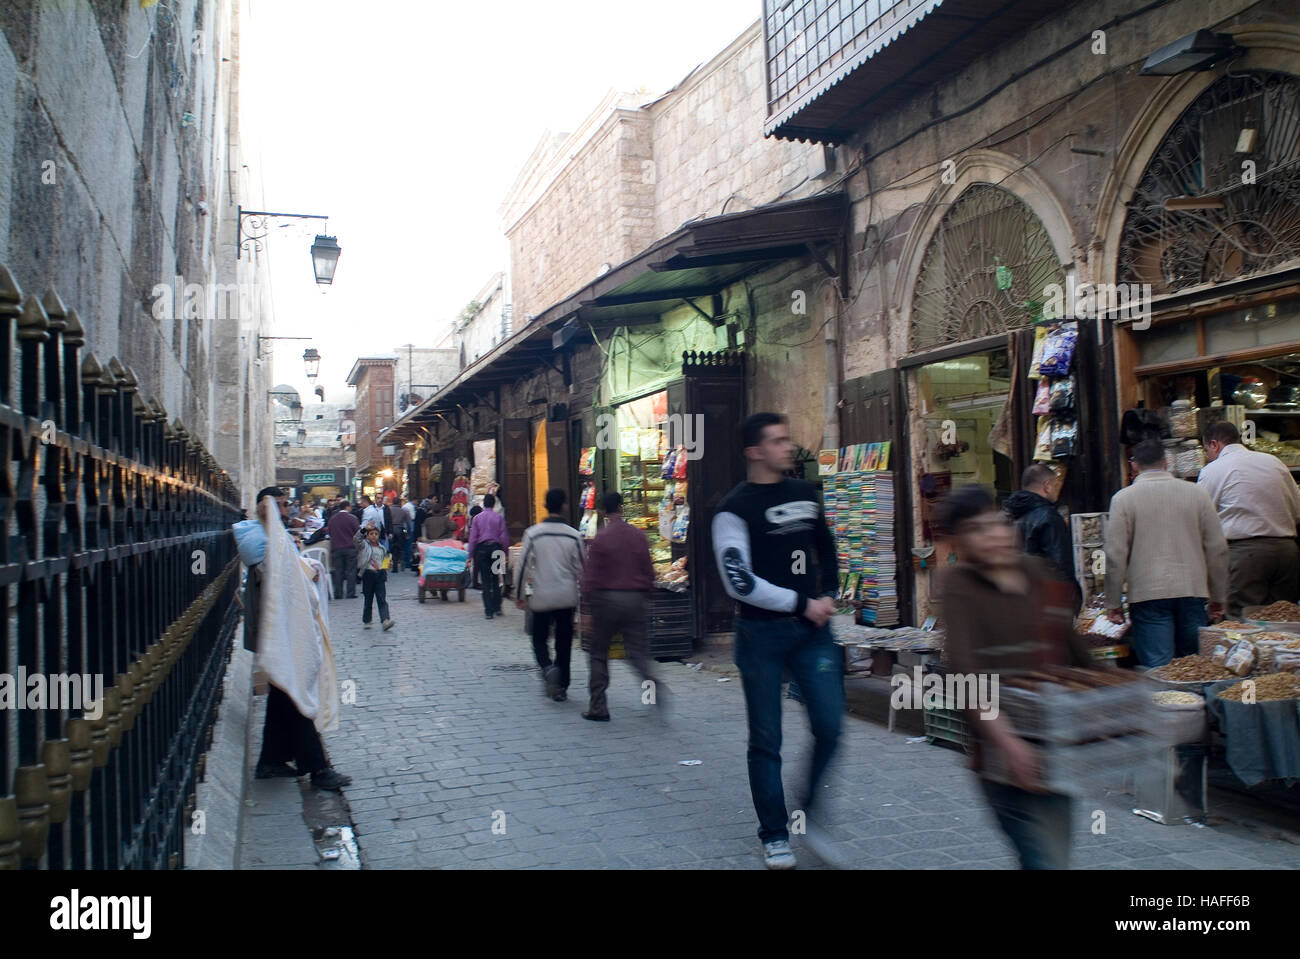 Une scène de rue dans la vieille ville d'Alep, Syrie, avant la guerre civile. Banque D'Images